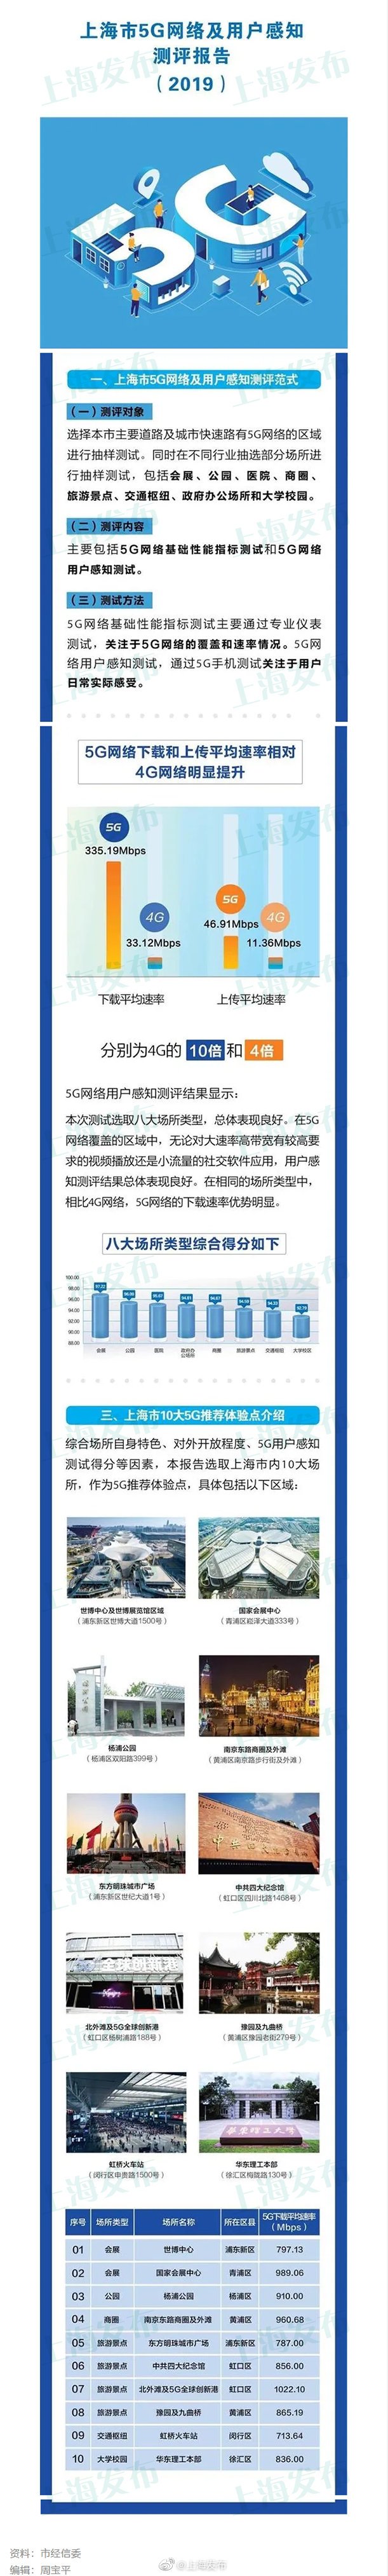 上海市发布了2019年5G网络及用户感知测评报告